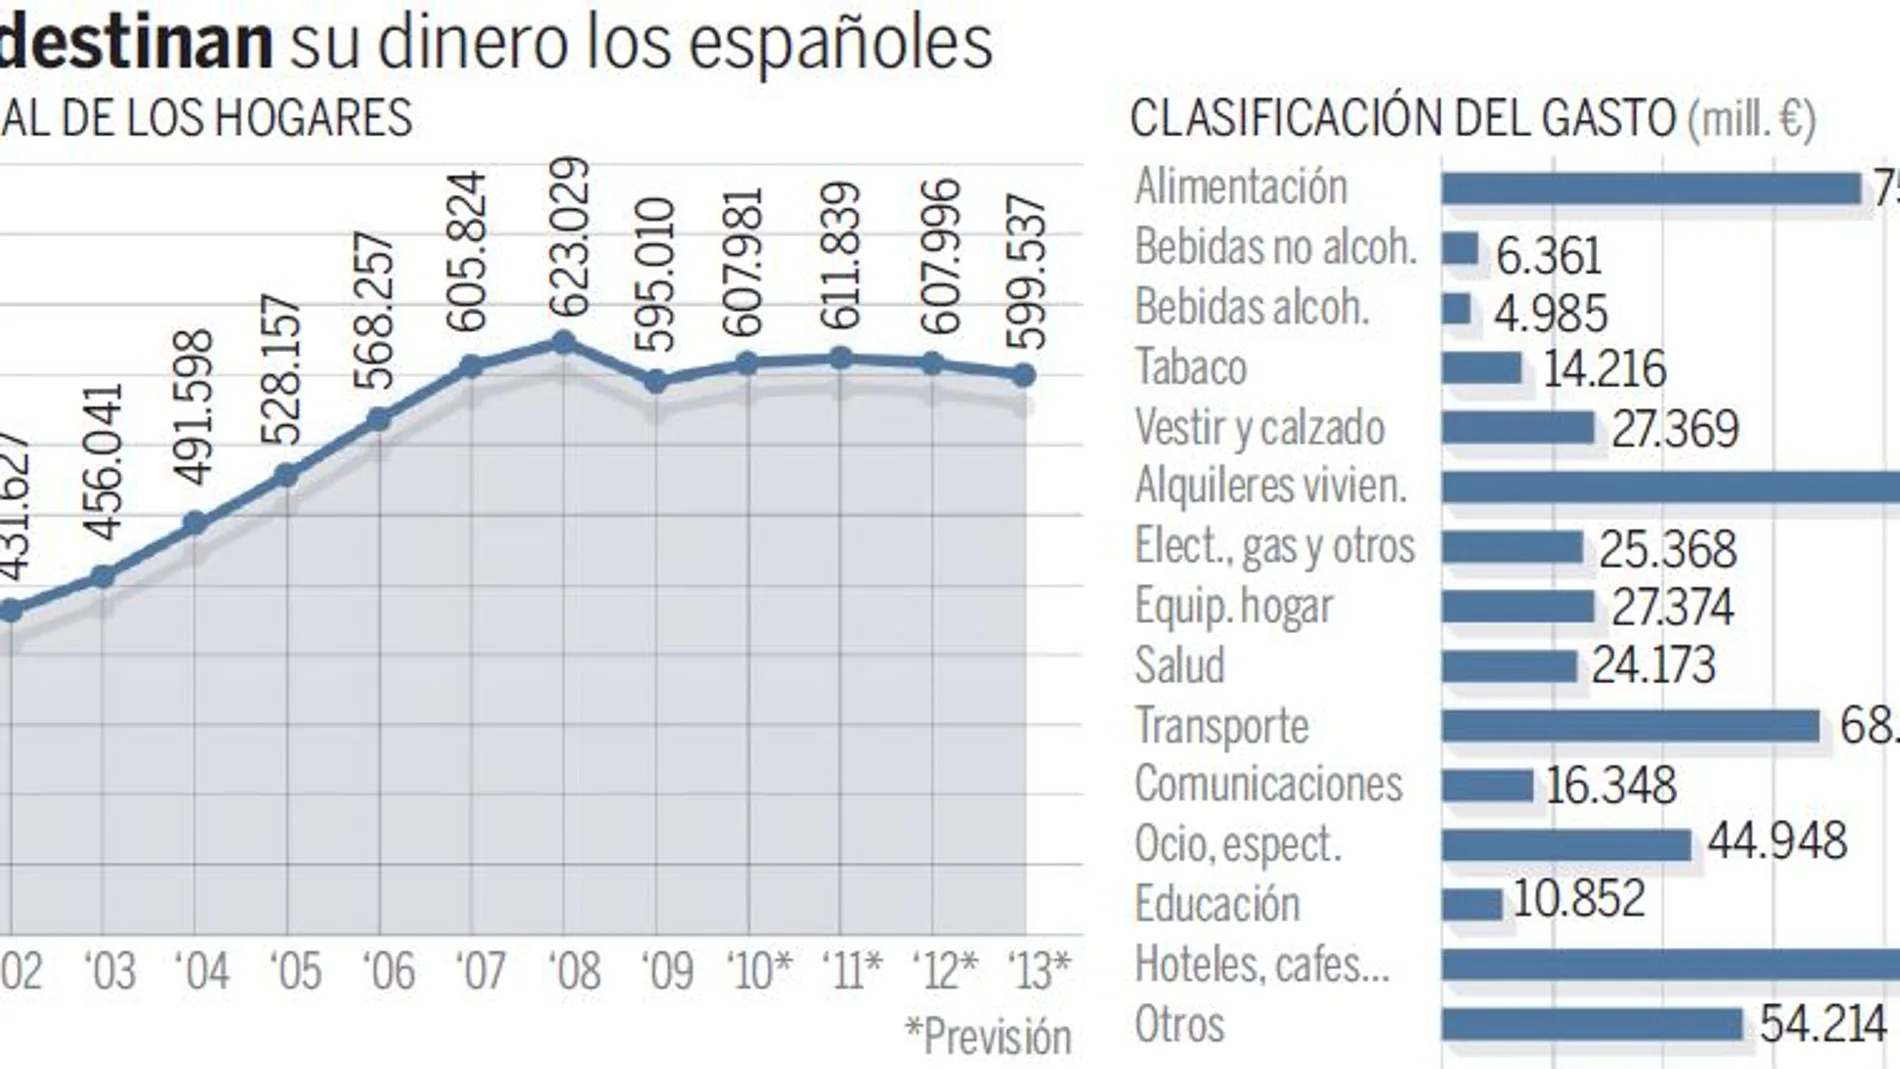 Los españoles gastan lo mismo en bares y restaurantes que en alquiler de viviendas